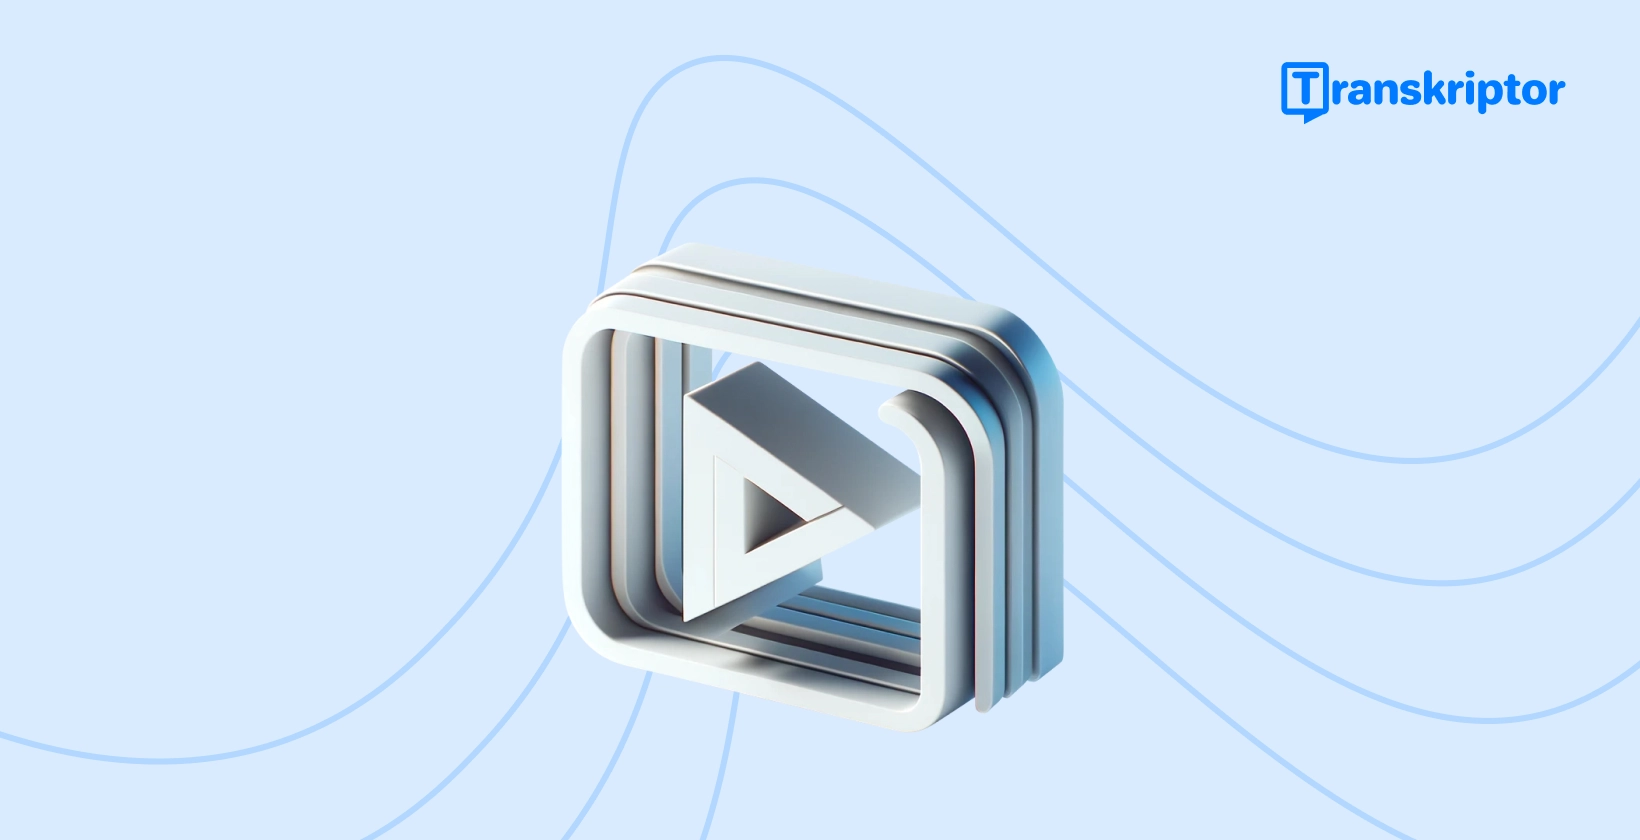 ビデオ編集を象徴する再生ボタンアイコンを備えた、ビデオへのキャプションの追加に関するステップバイステップのチュートリアルバナー。